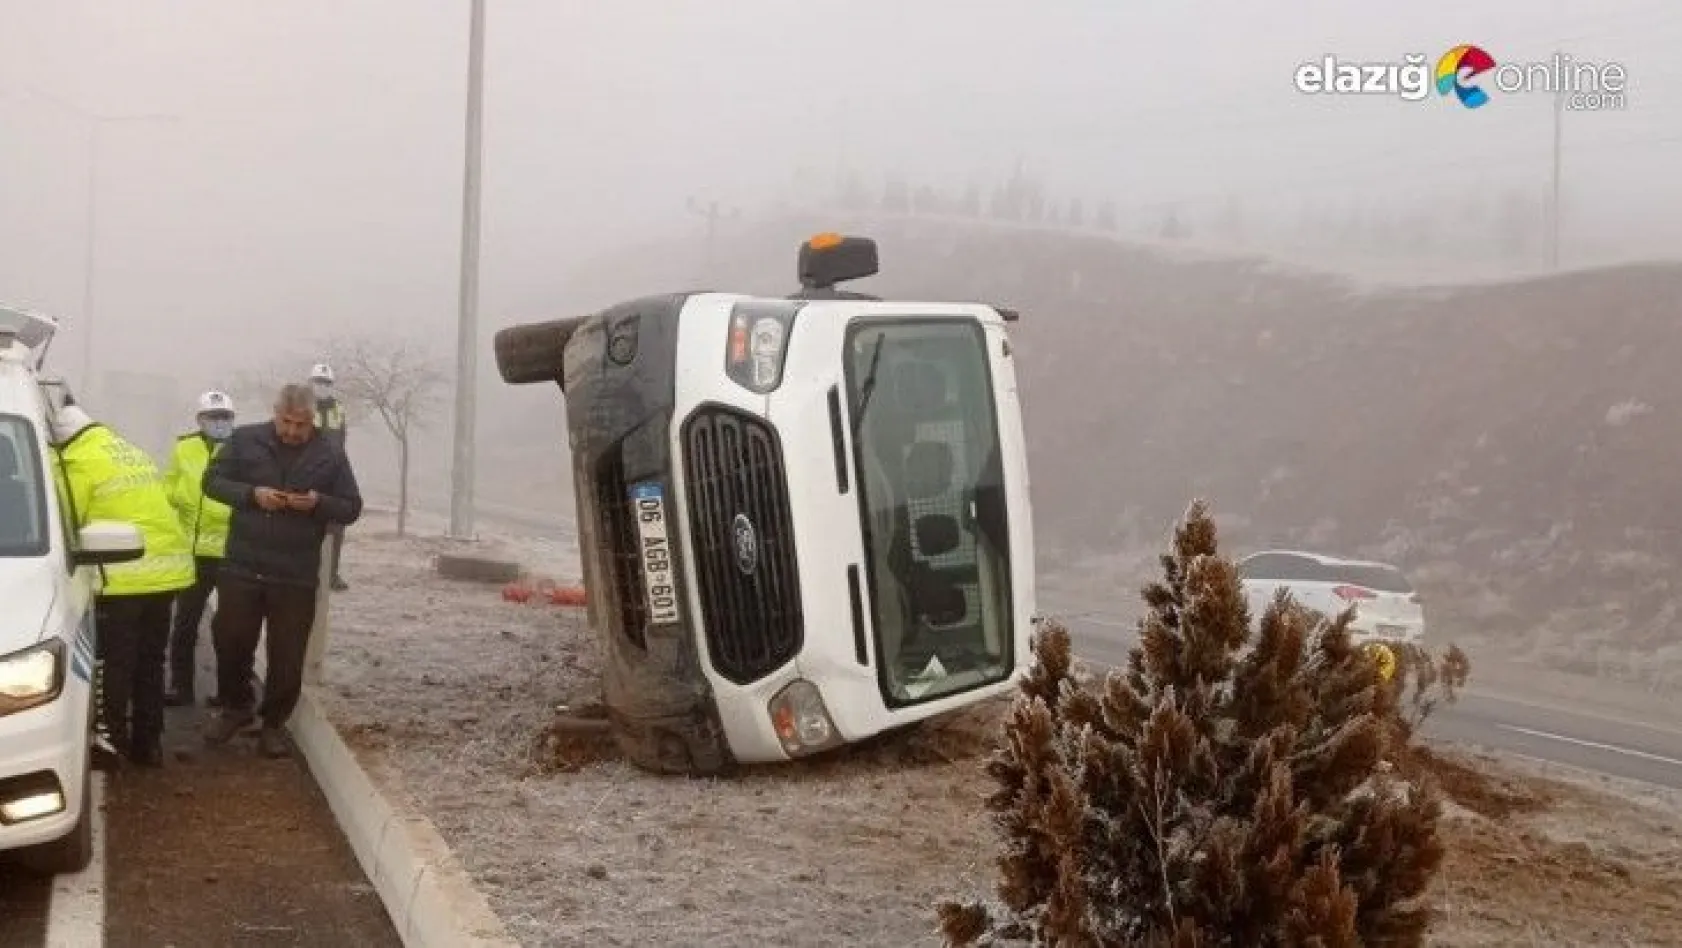 Elazığ'da 2 ayrı trafik kazası: 5 yaralı